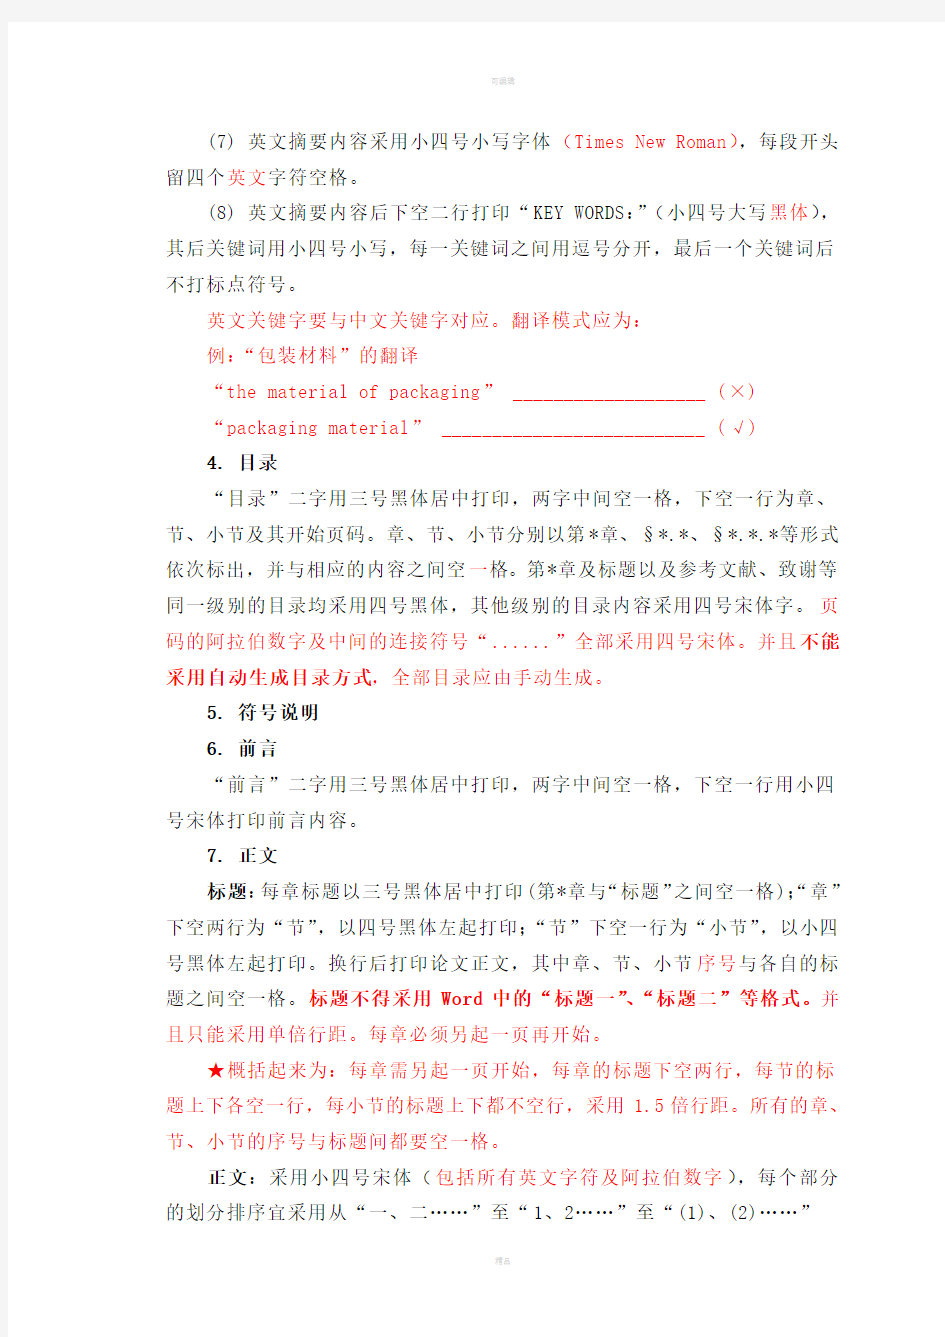 河南科技大学毕业设计说明书(论文)的格式规范